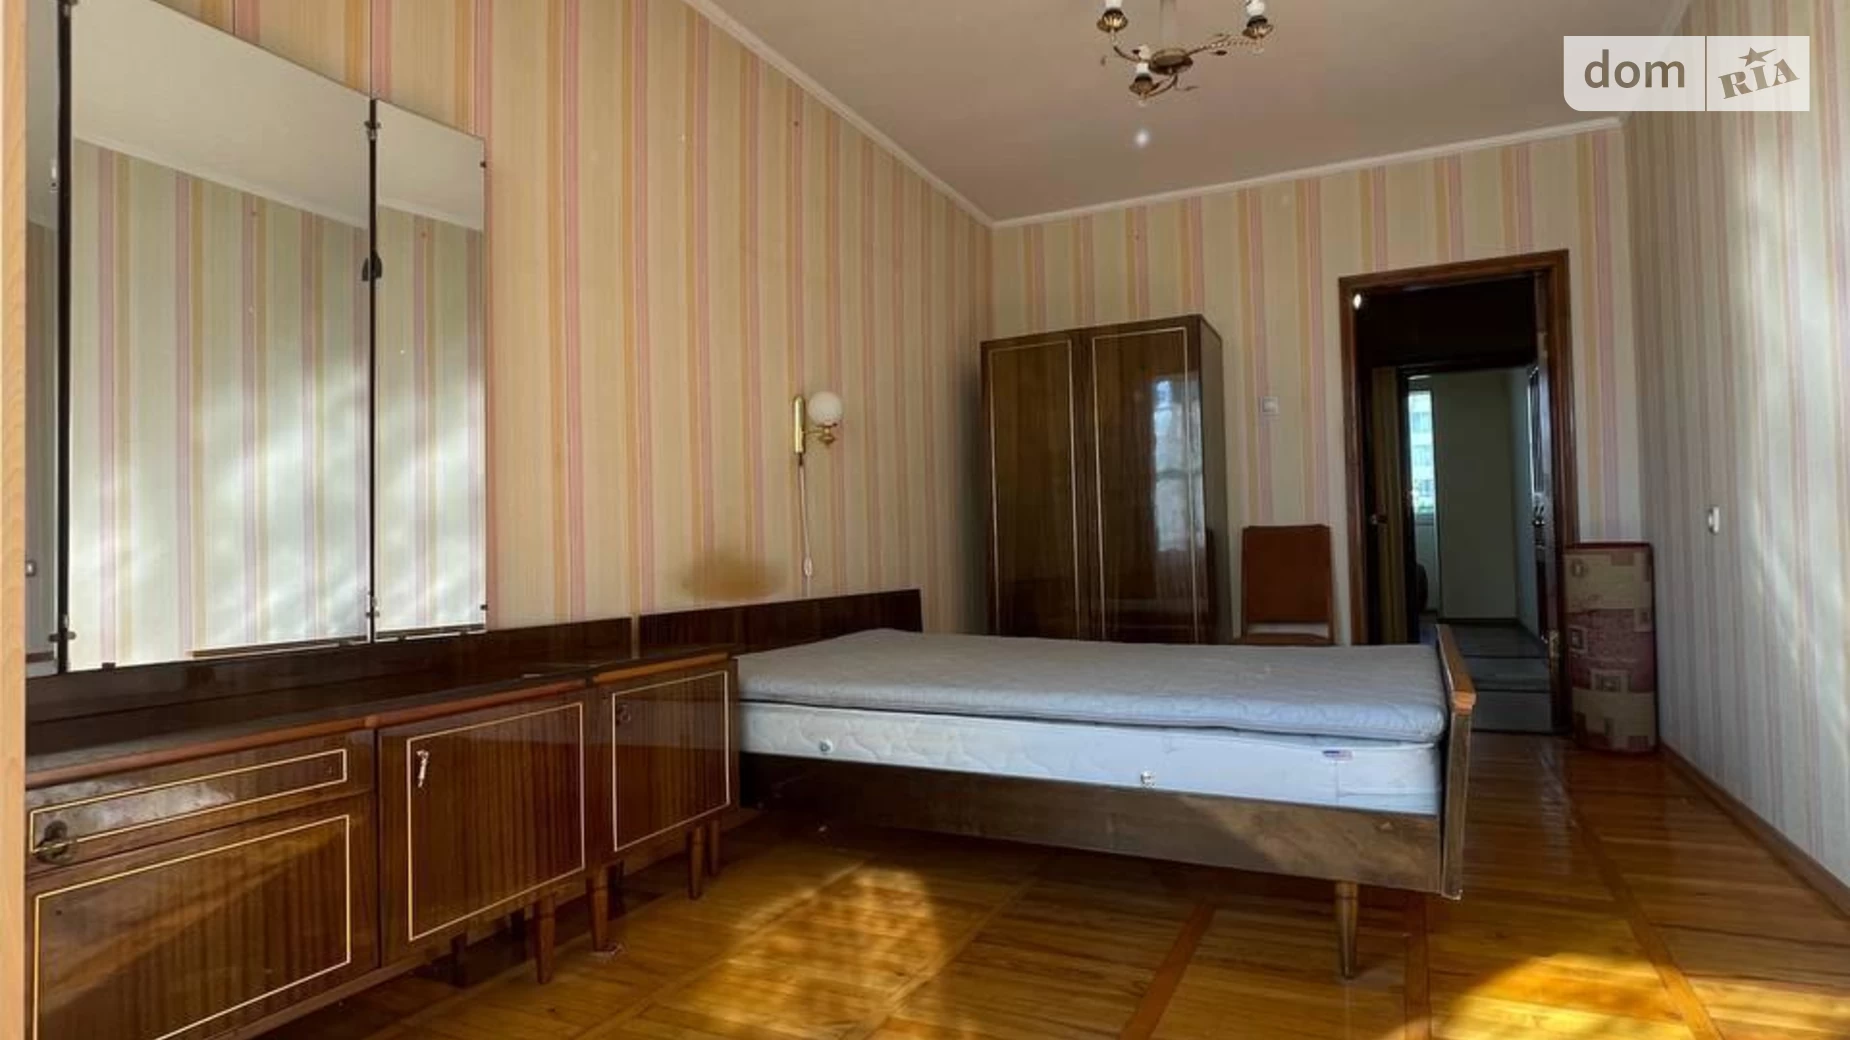 Продается undefined-комнатная квартира  кв. м в Ивано-Франковске, ул. Троллейбусная